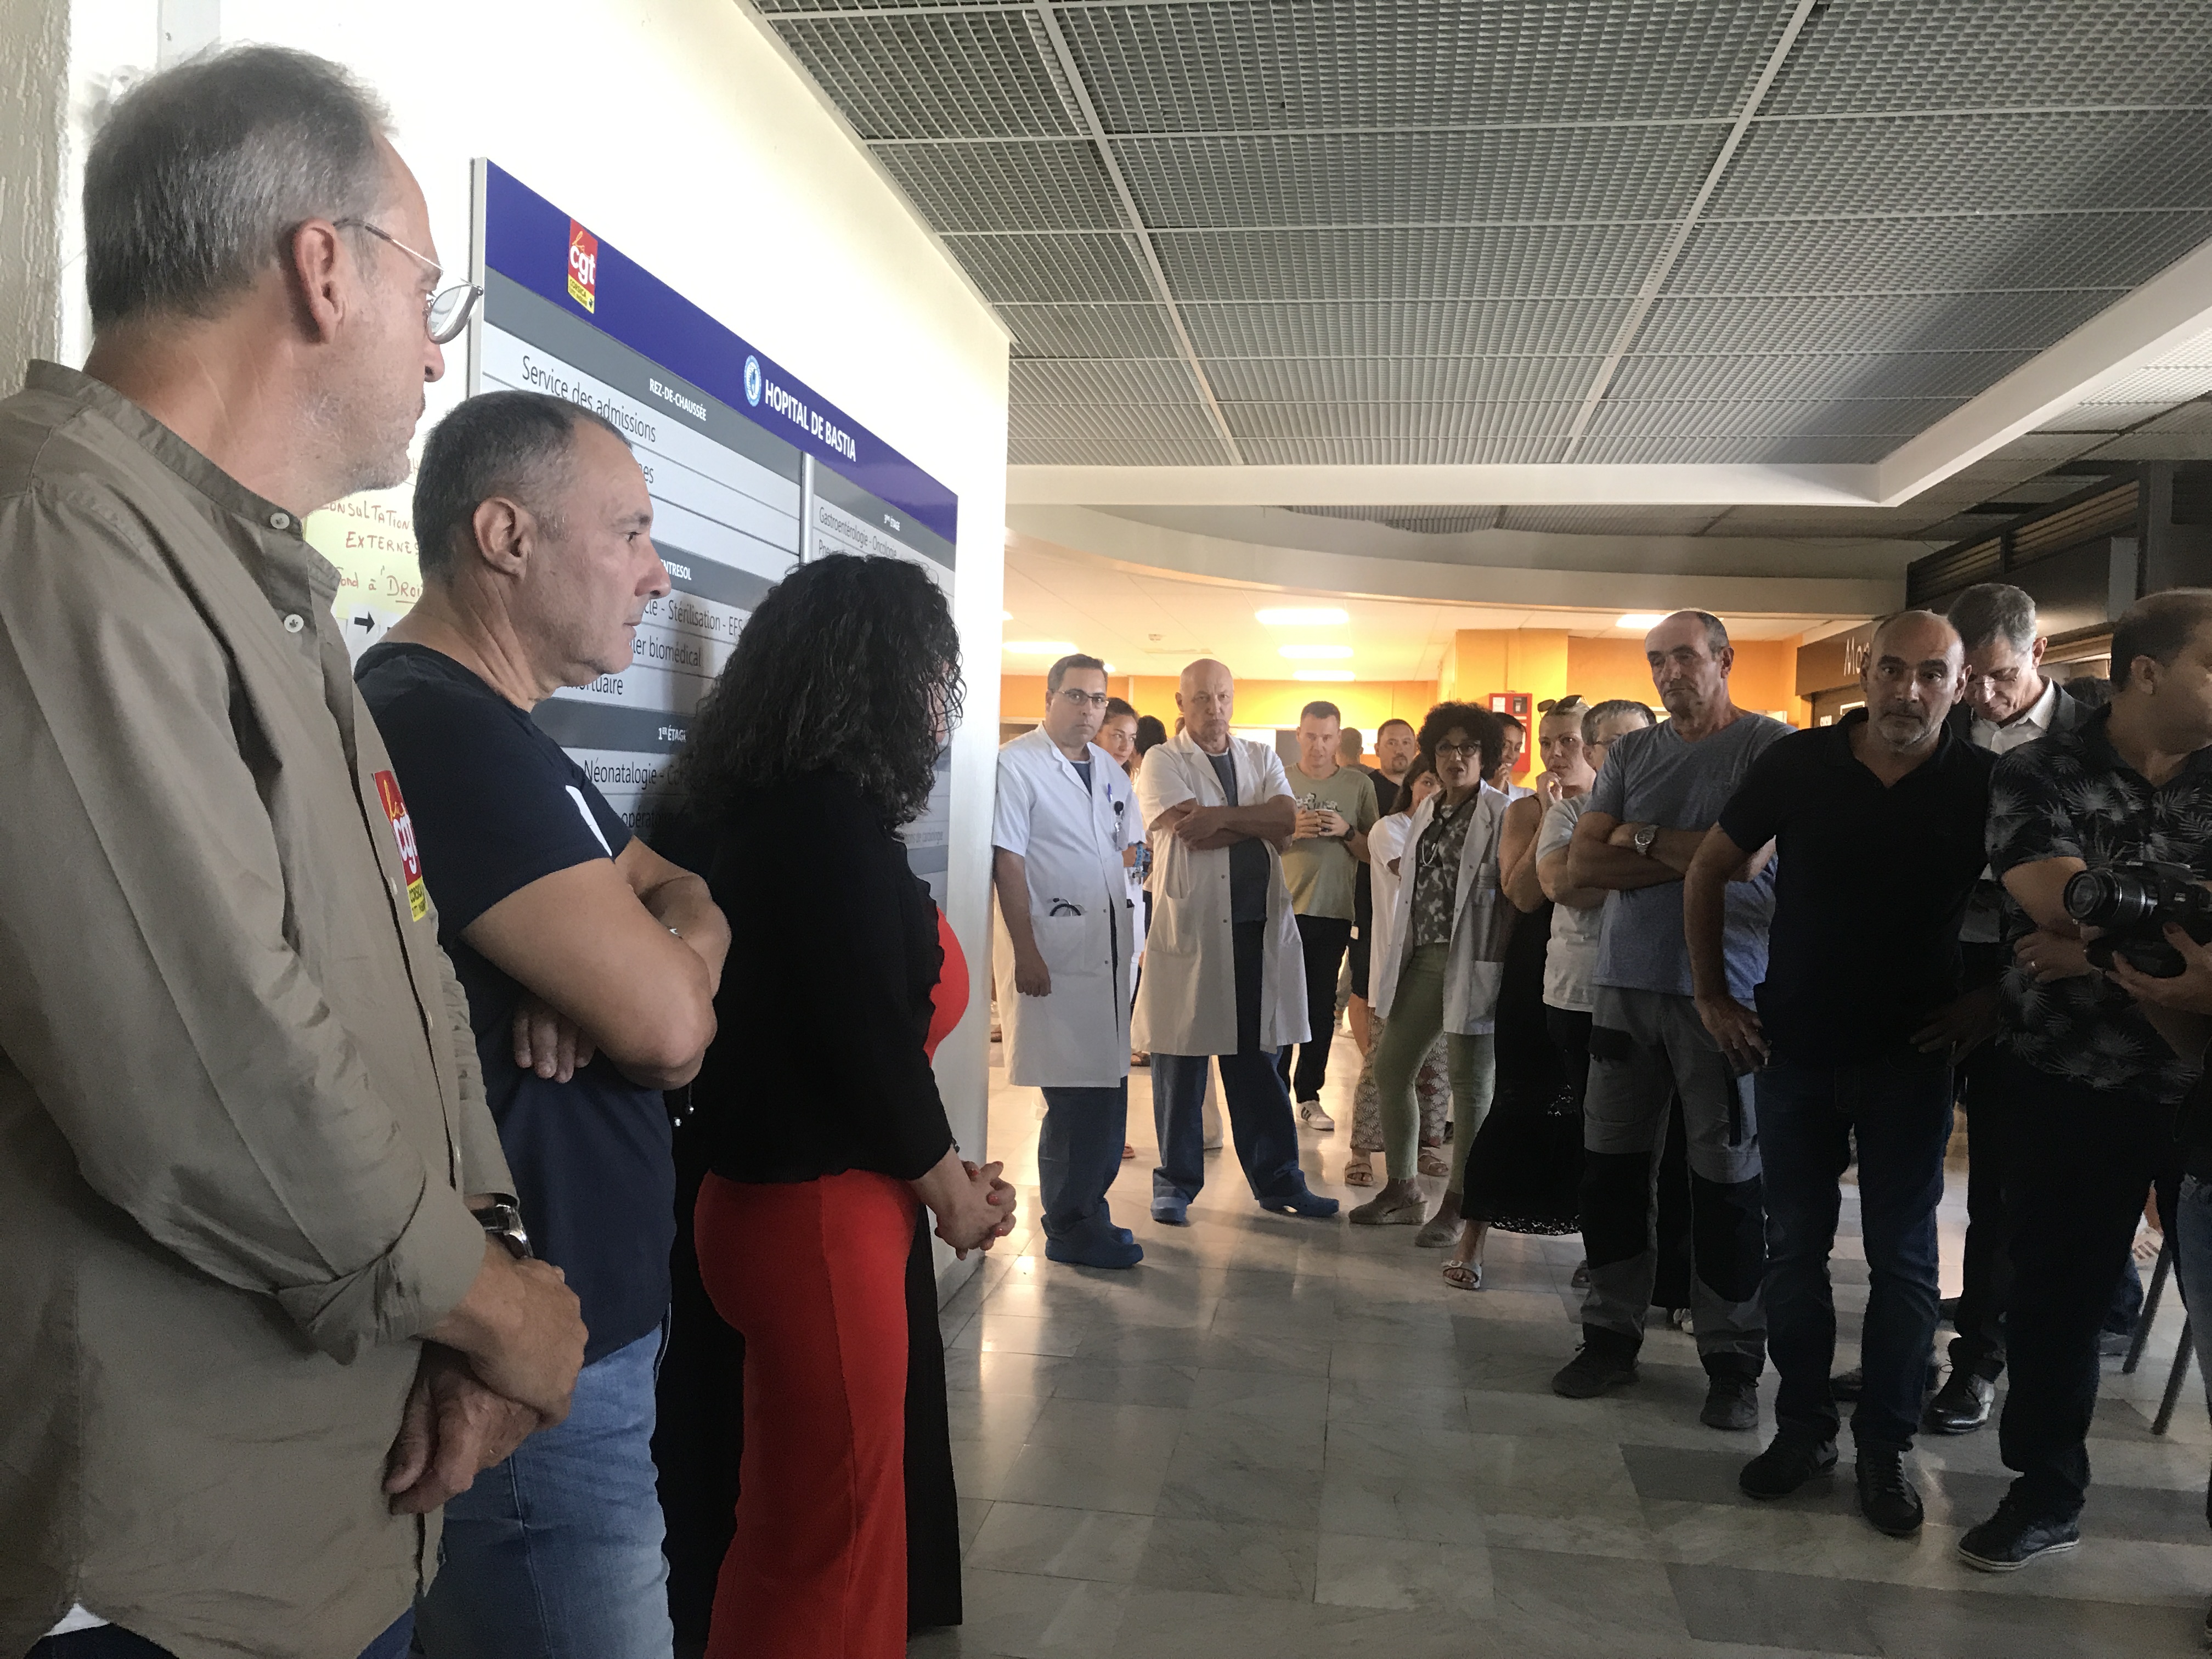 VIDEO - Hôpital de Bastia : la CGT appelle à une grève générale dans tous les services